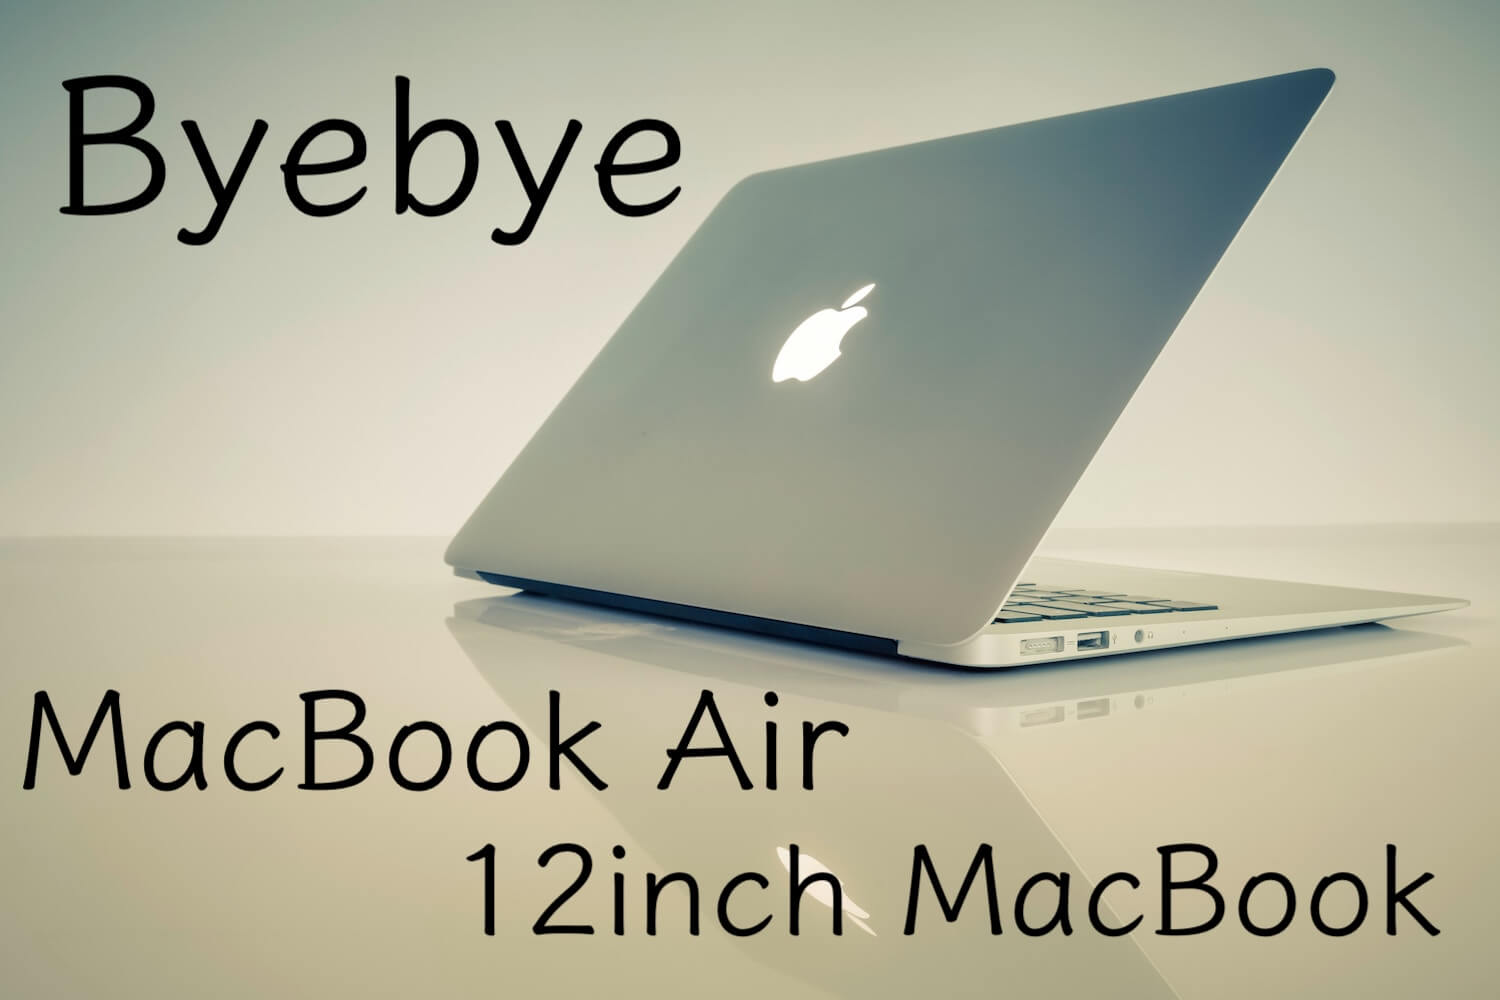 さようなら、12インチMacBook。非Retina MacBook Air。